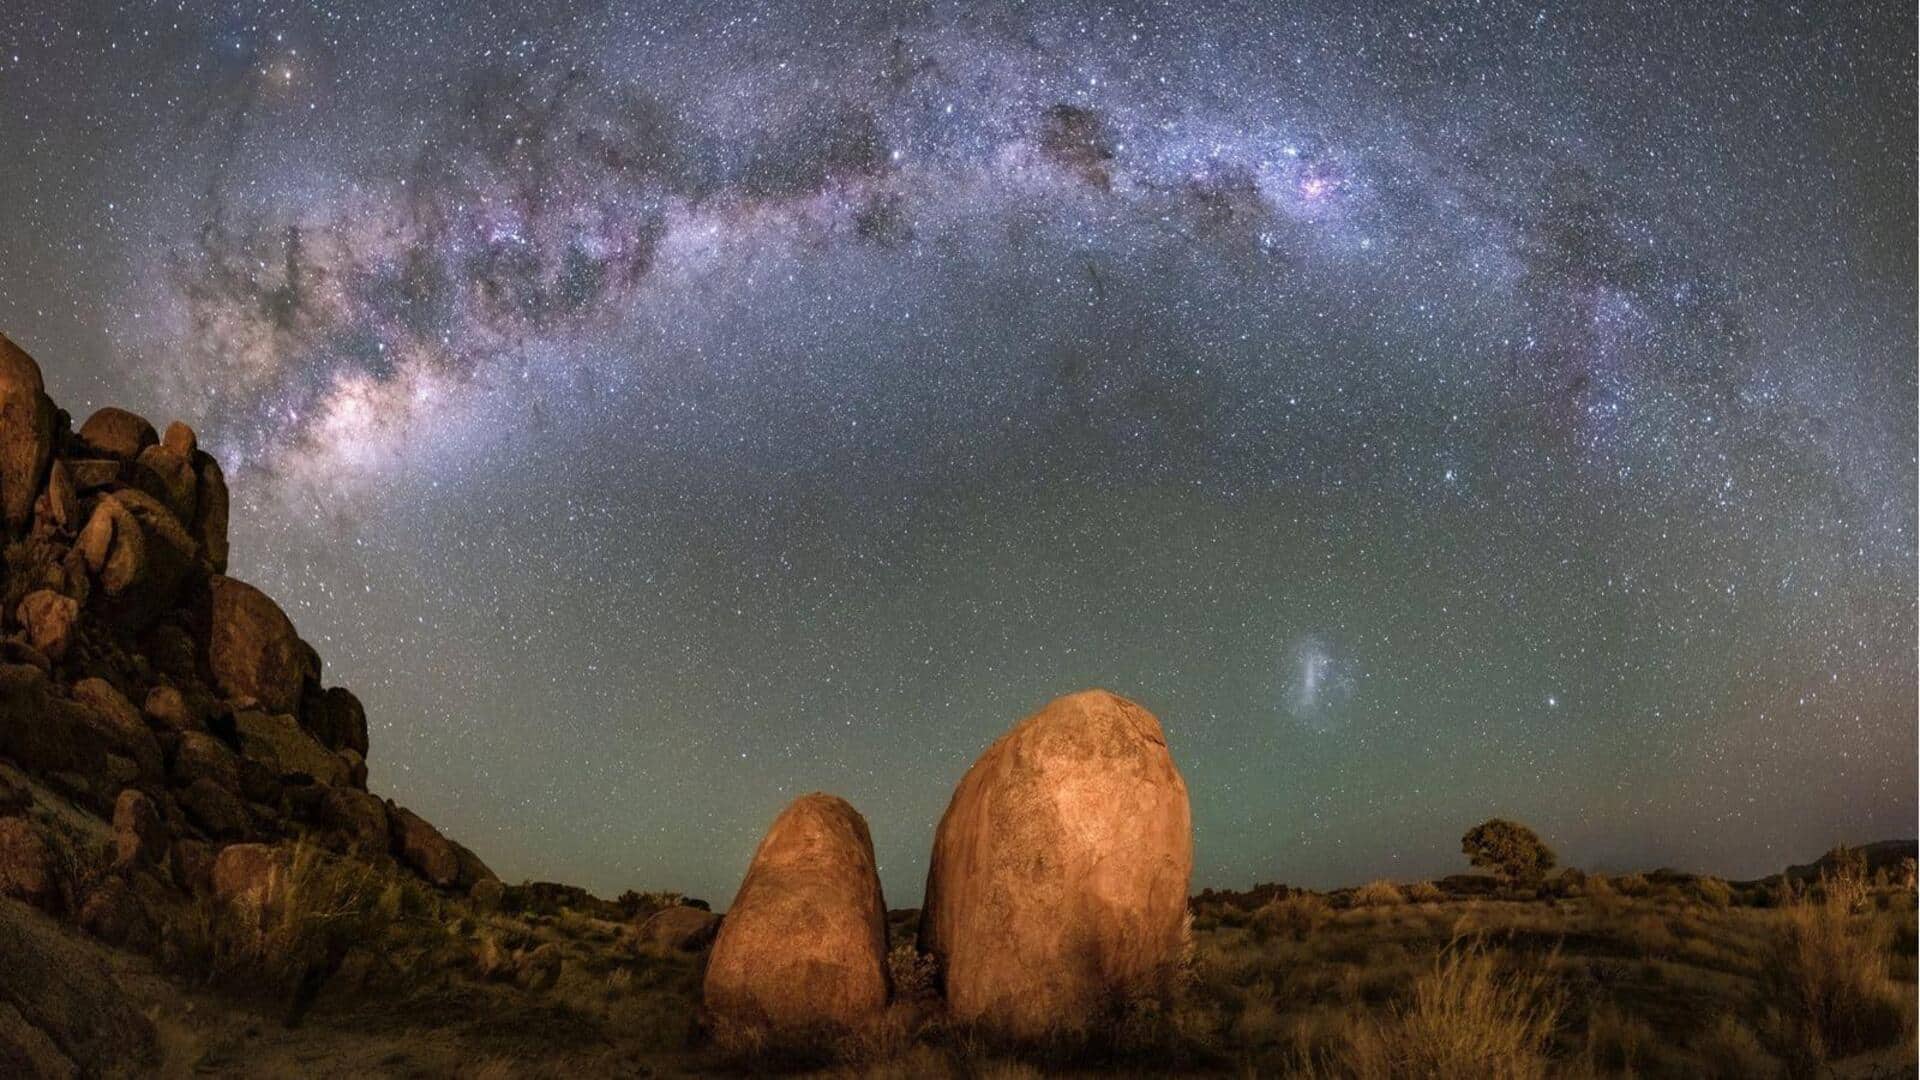 Saksikan langit malam yang dipenuhi bintang di Sossusvlei, Namibia 